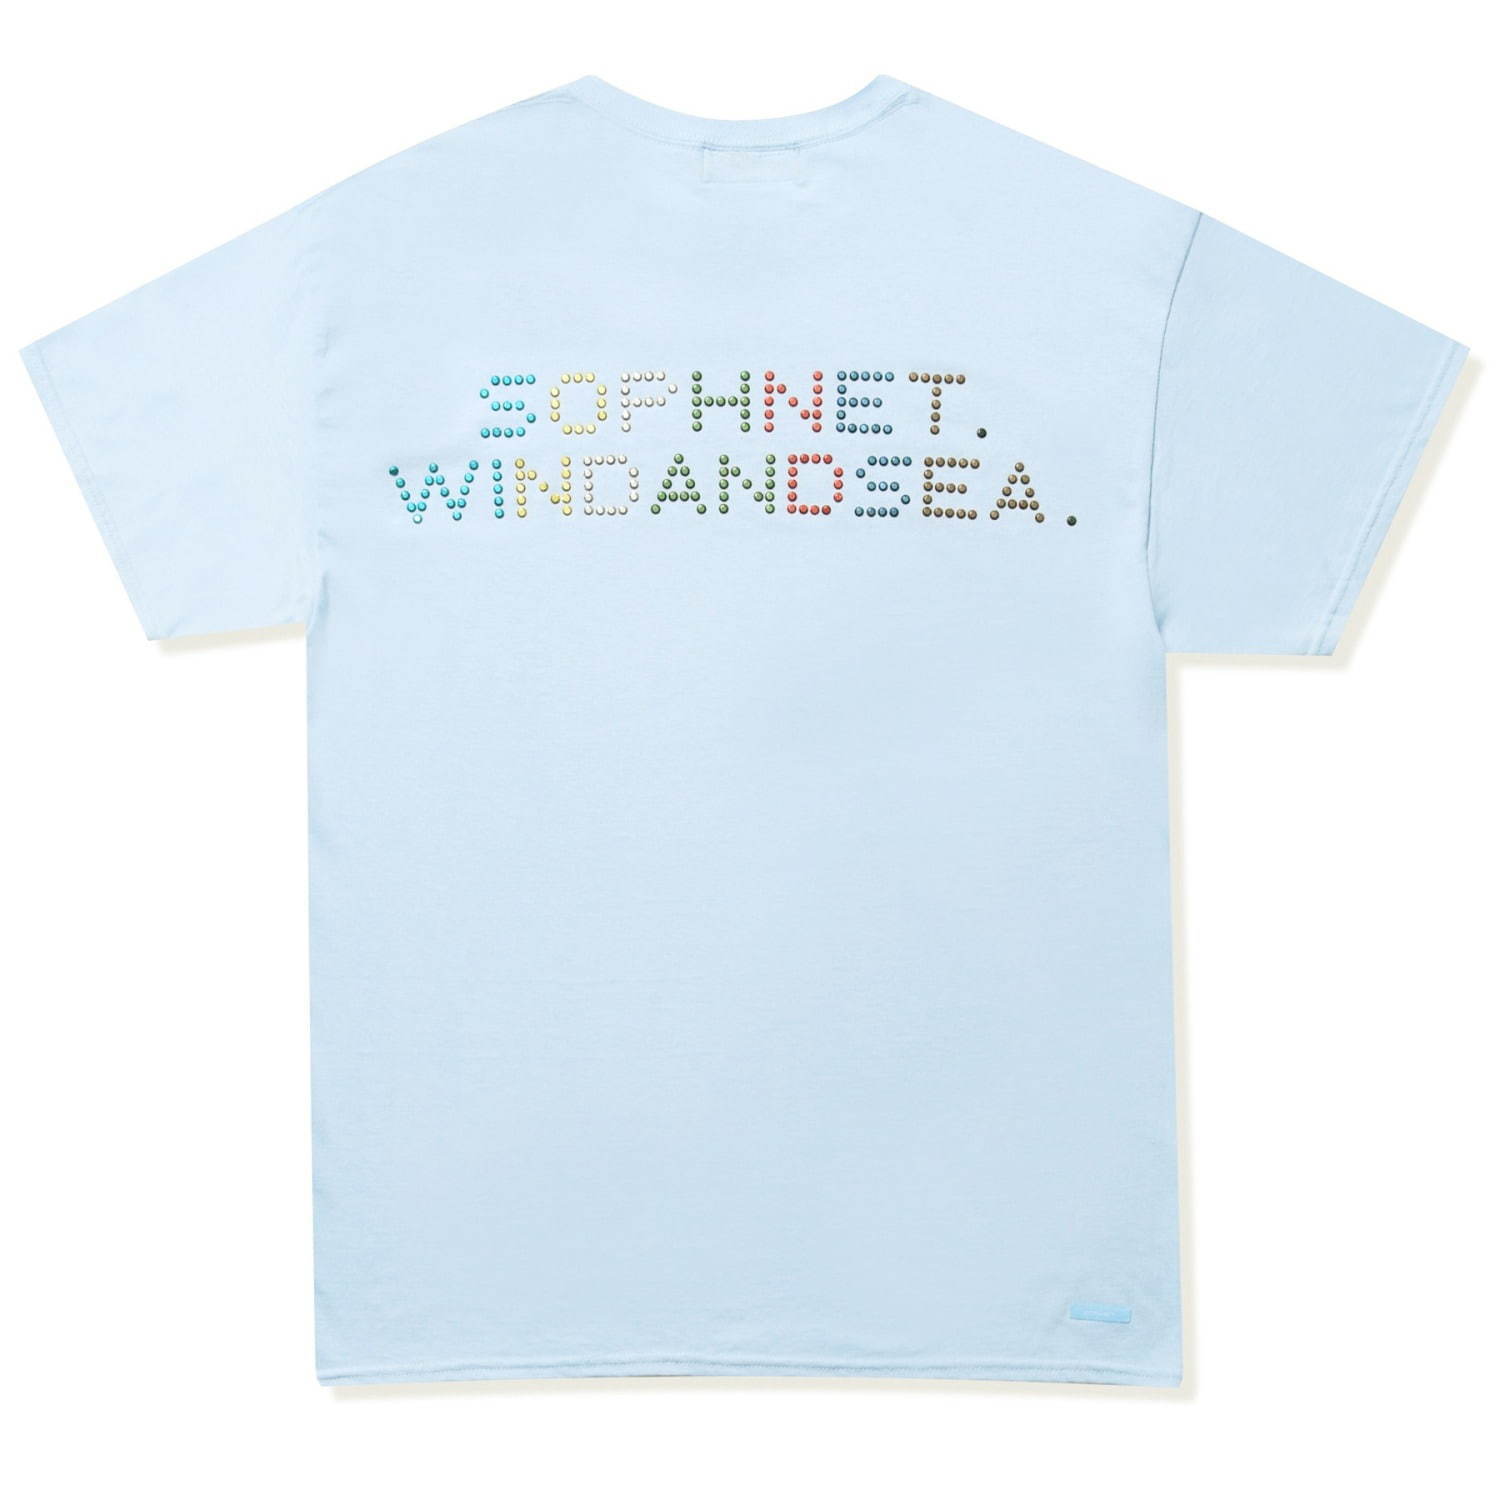 ソフネット×ウィンダンシー“ラインストーンロゴ”を配したTシャツ 